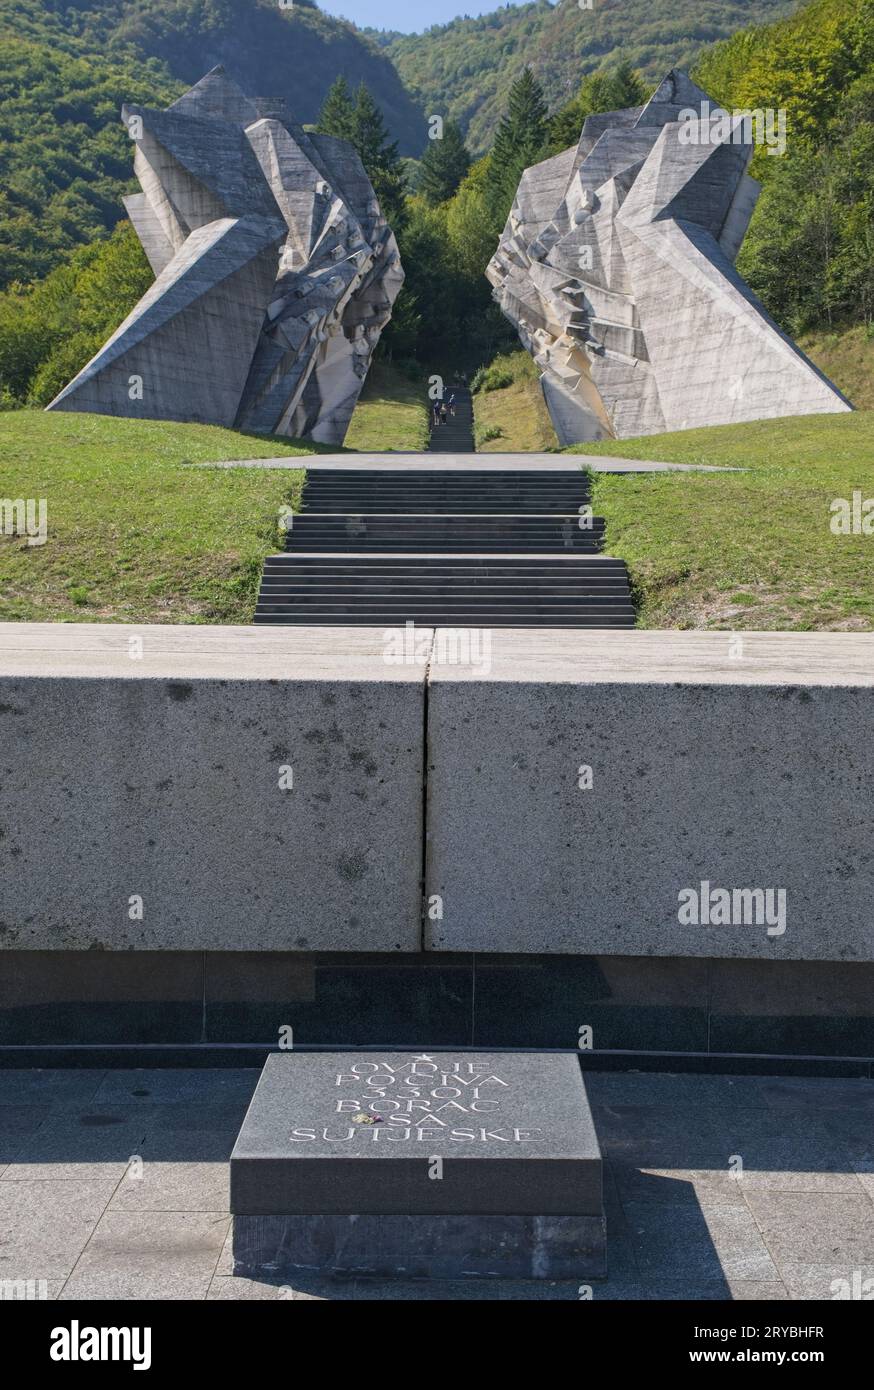 Tjentiste, Bosnie-Herzégovine - 29 septembre 2023 : ce complexe commémoratif commémore la bataille de la Sutjeska pendant la Seconde Guerre mondiale. Sunny sum Banque D'Images